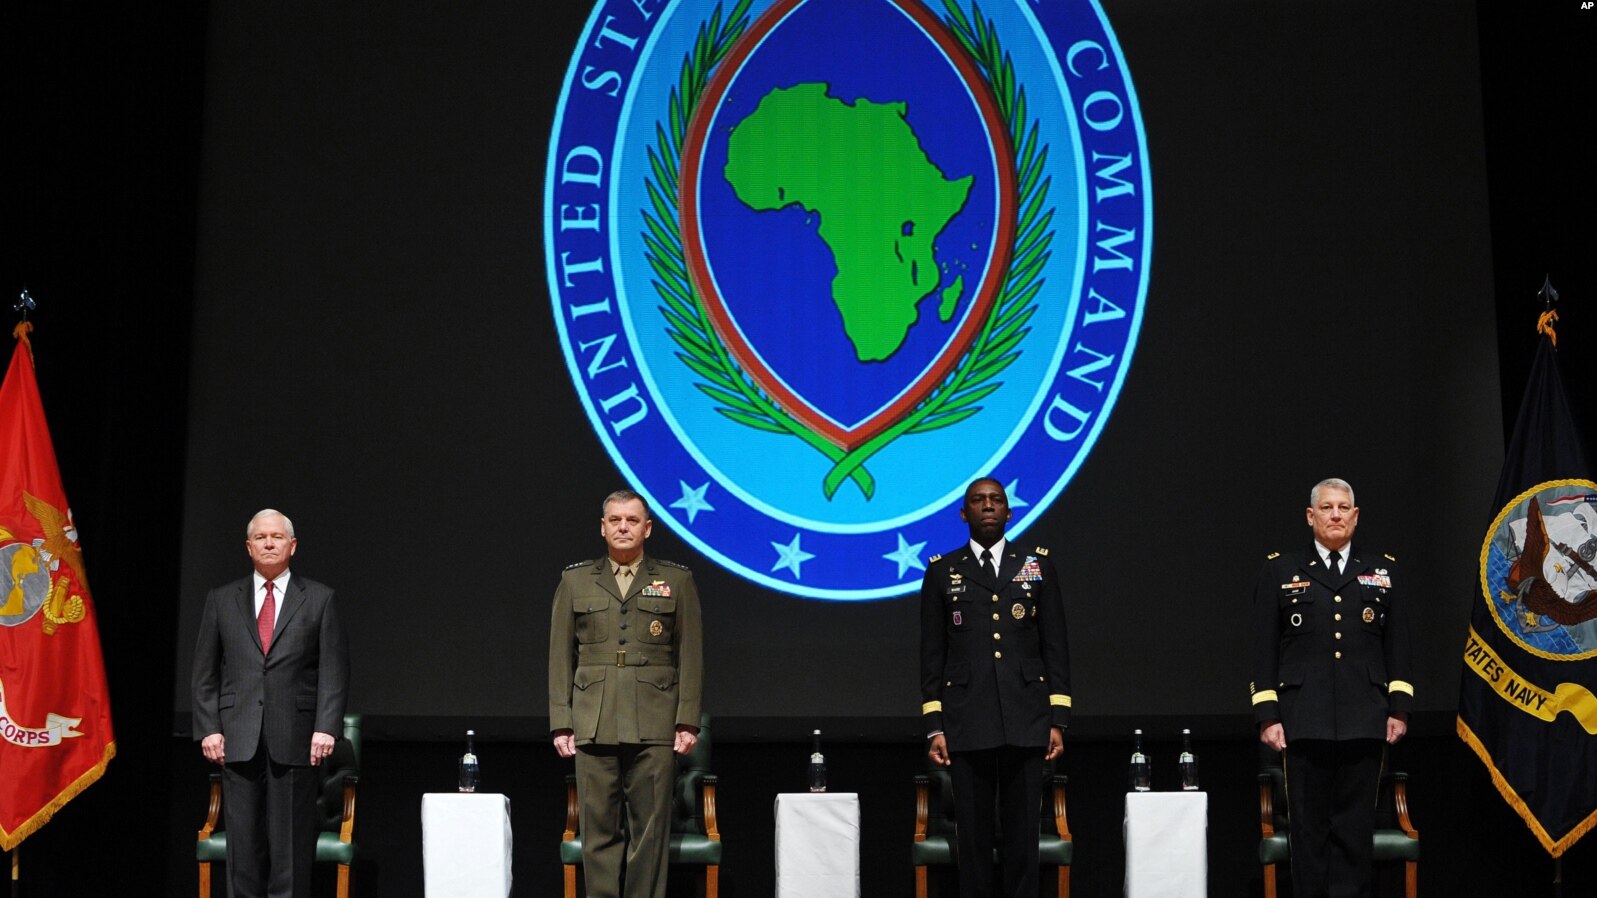 Les Etats-Unis et le Maroc lancent le plus large exercice militaire en Afrique